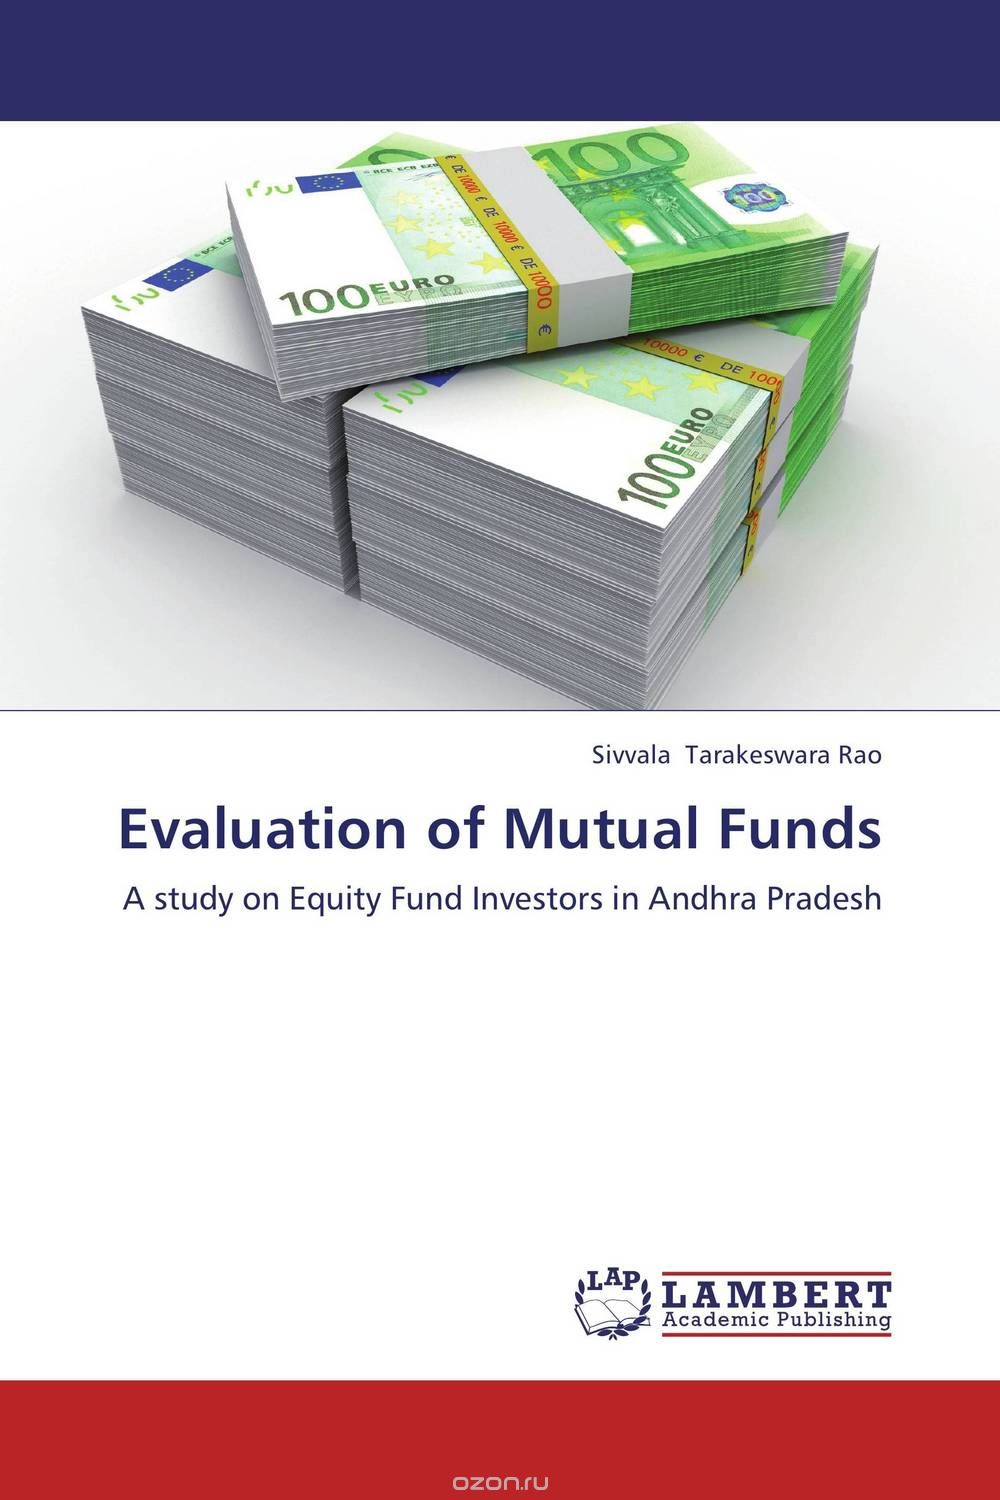 Скачать книгу "Evaluation of Mutual Funds"